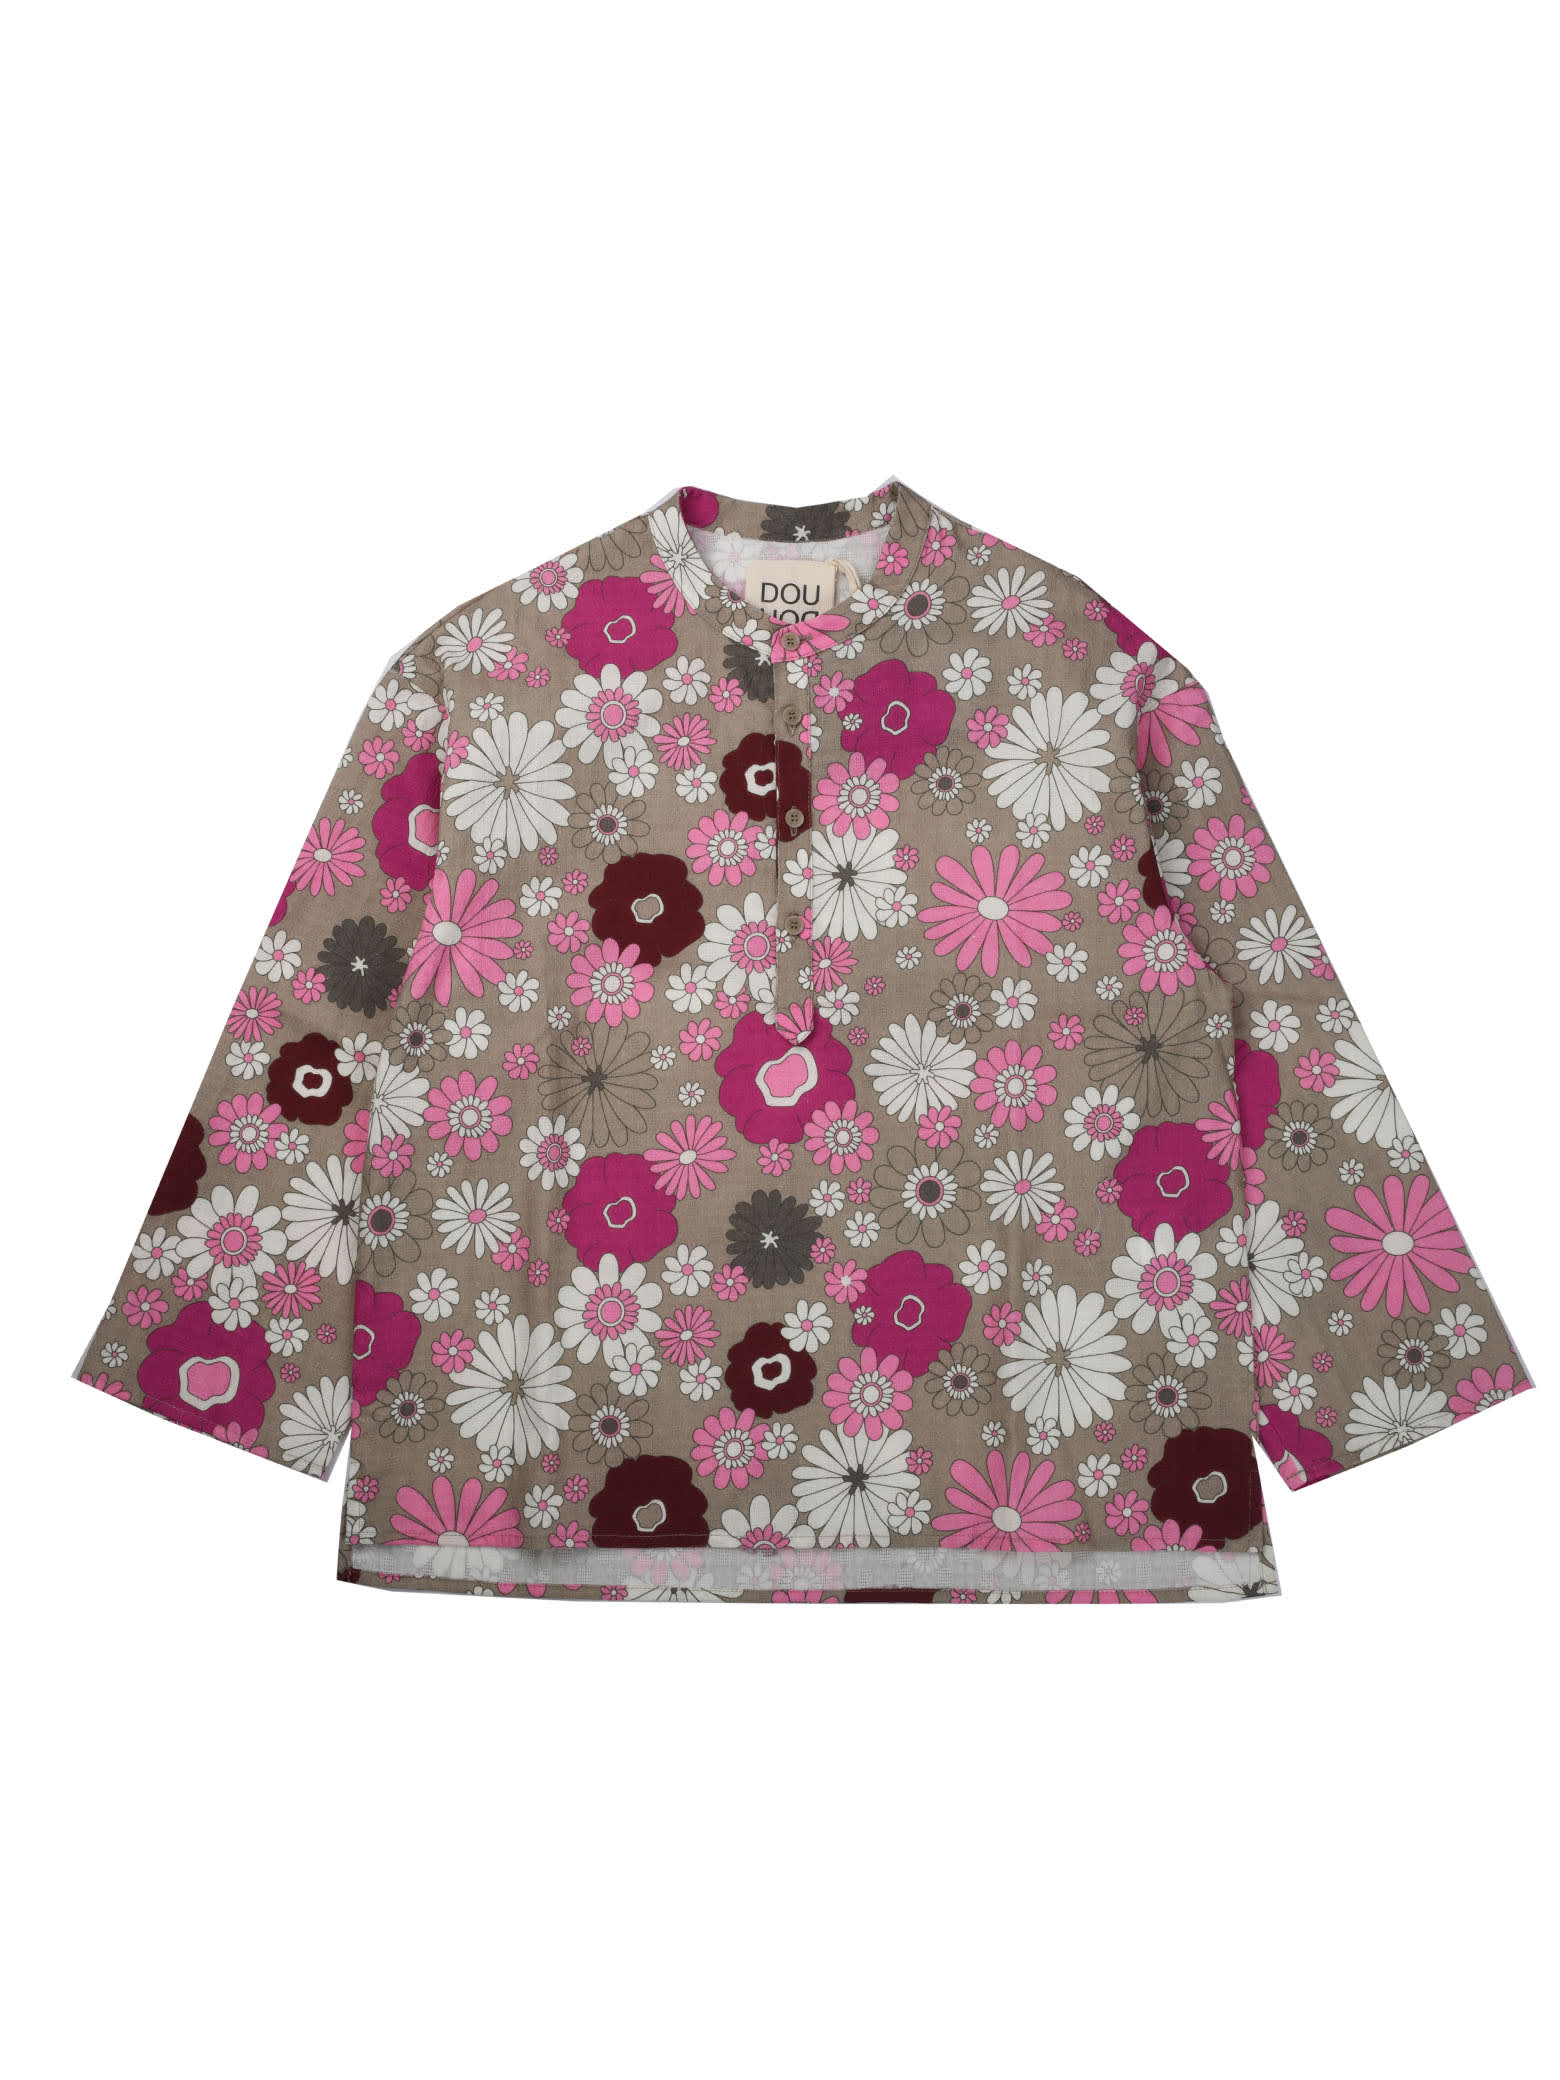 Douuod Flower Pattern Korean Shirt